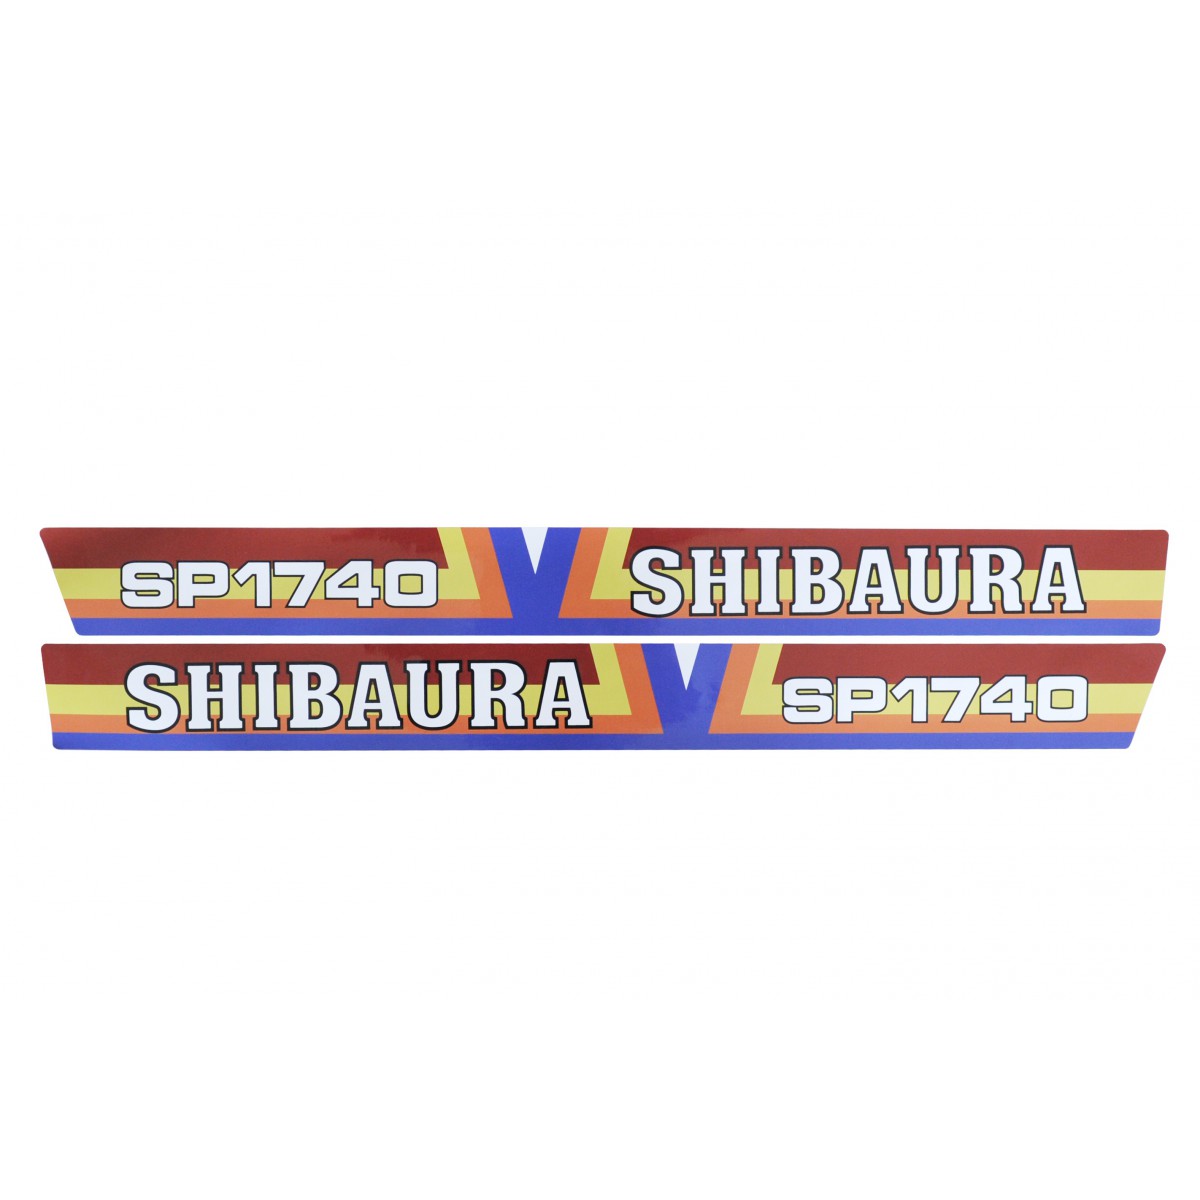 Naklejki Shibaura SP1740